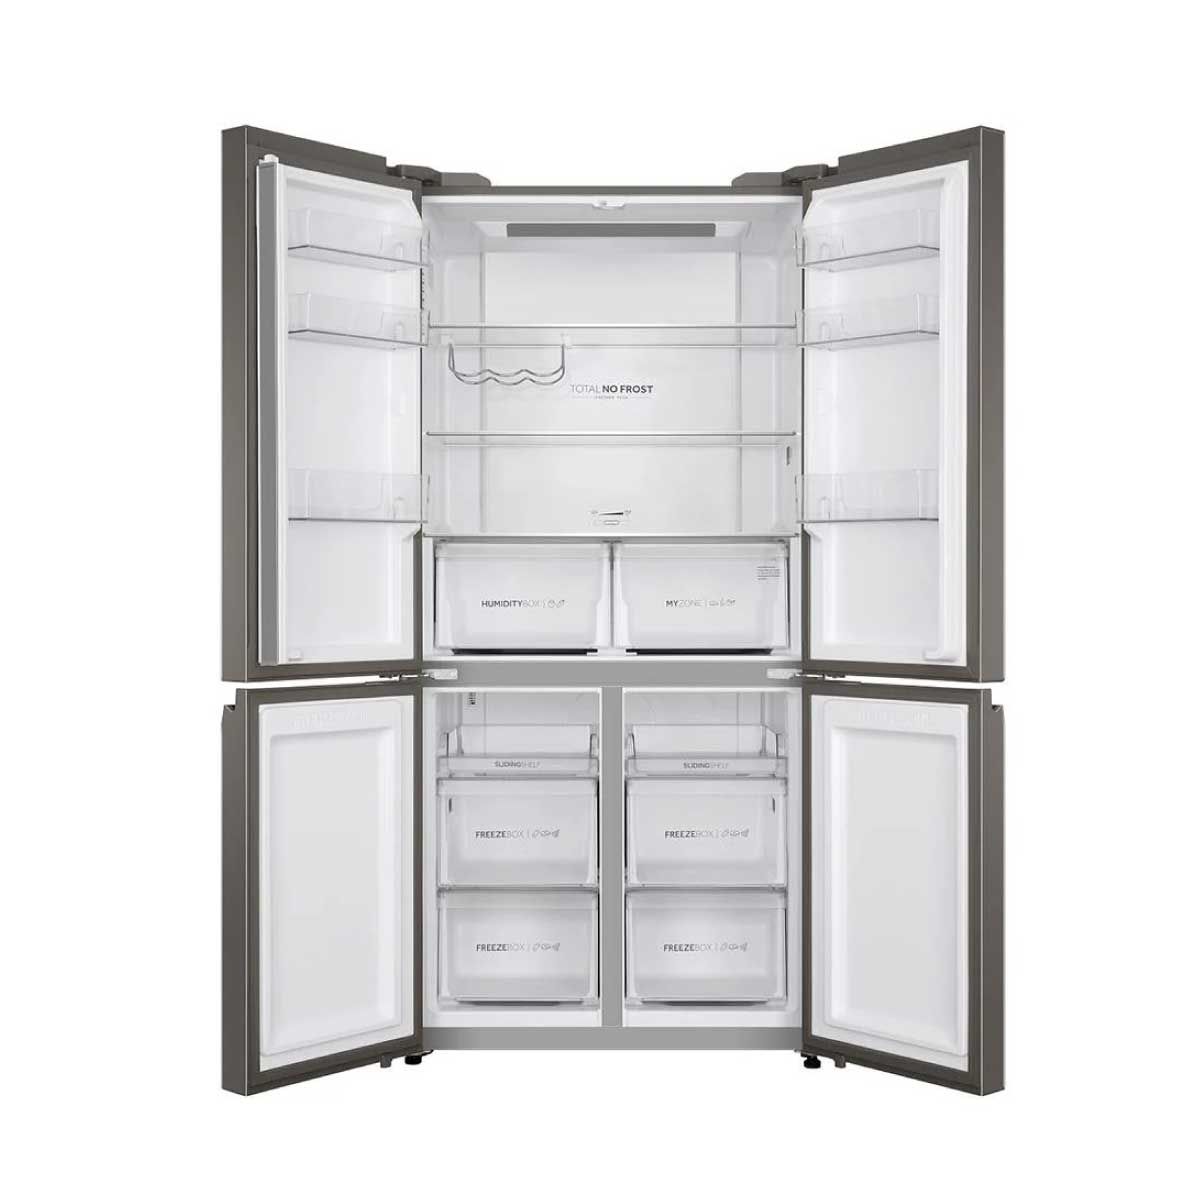 HAIER ตู้เย็น 4 ประตู  19.5Q กระจกสีดำ รุ่นHRF-MD550GB